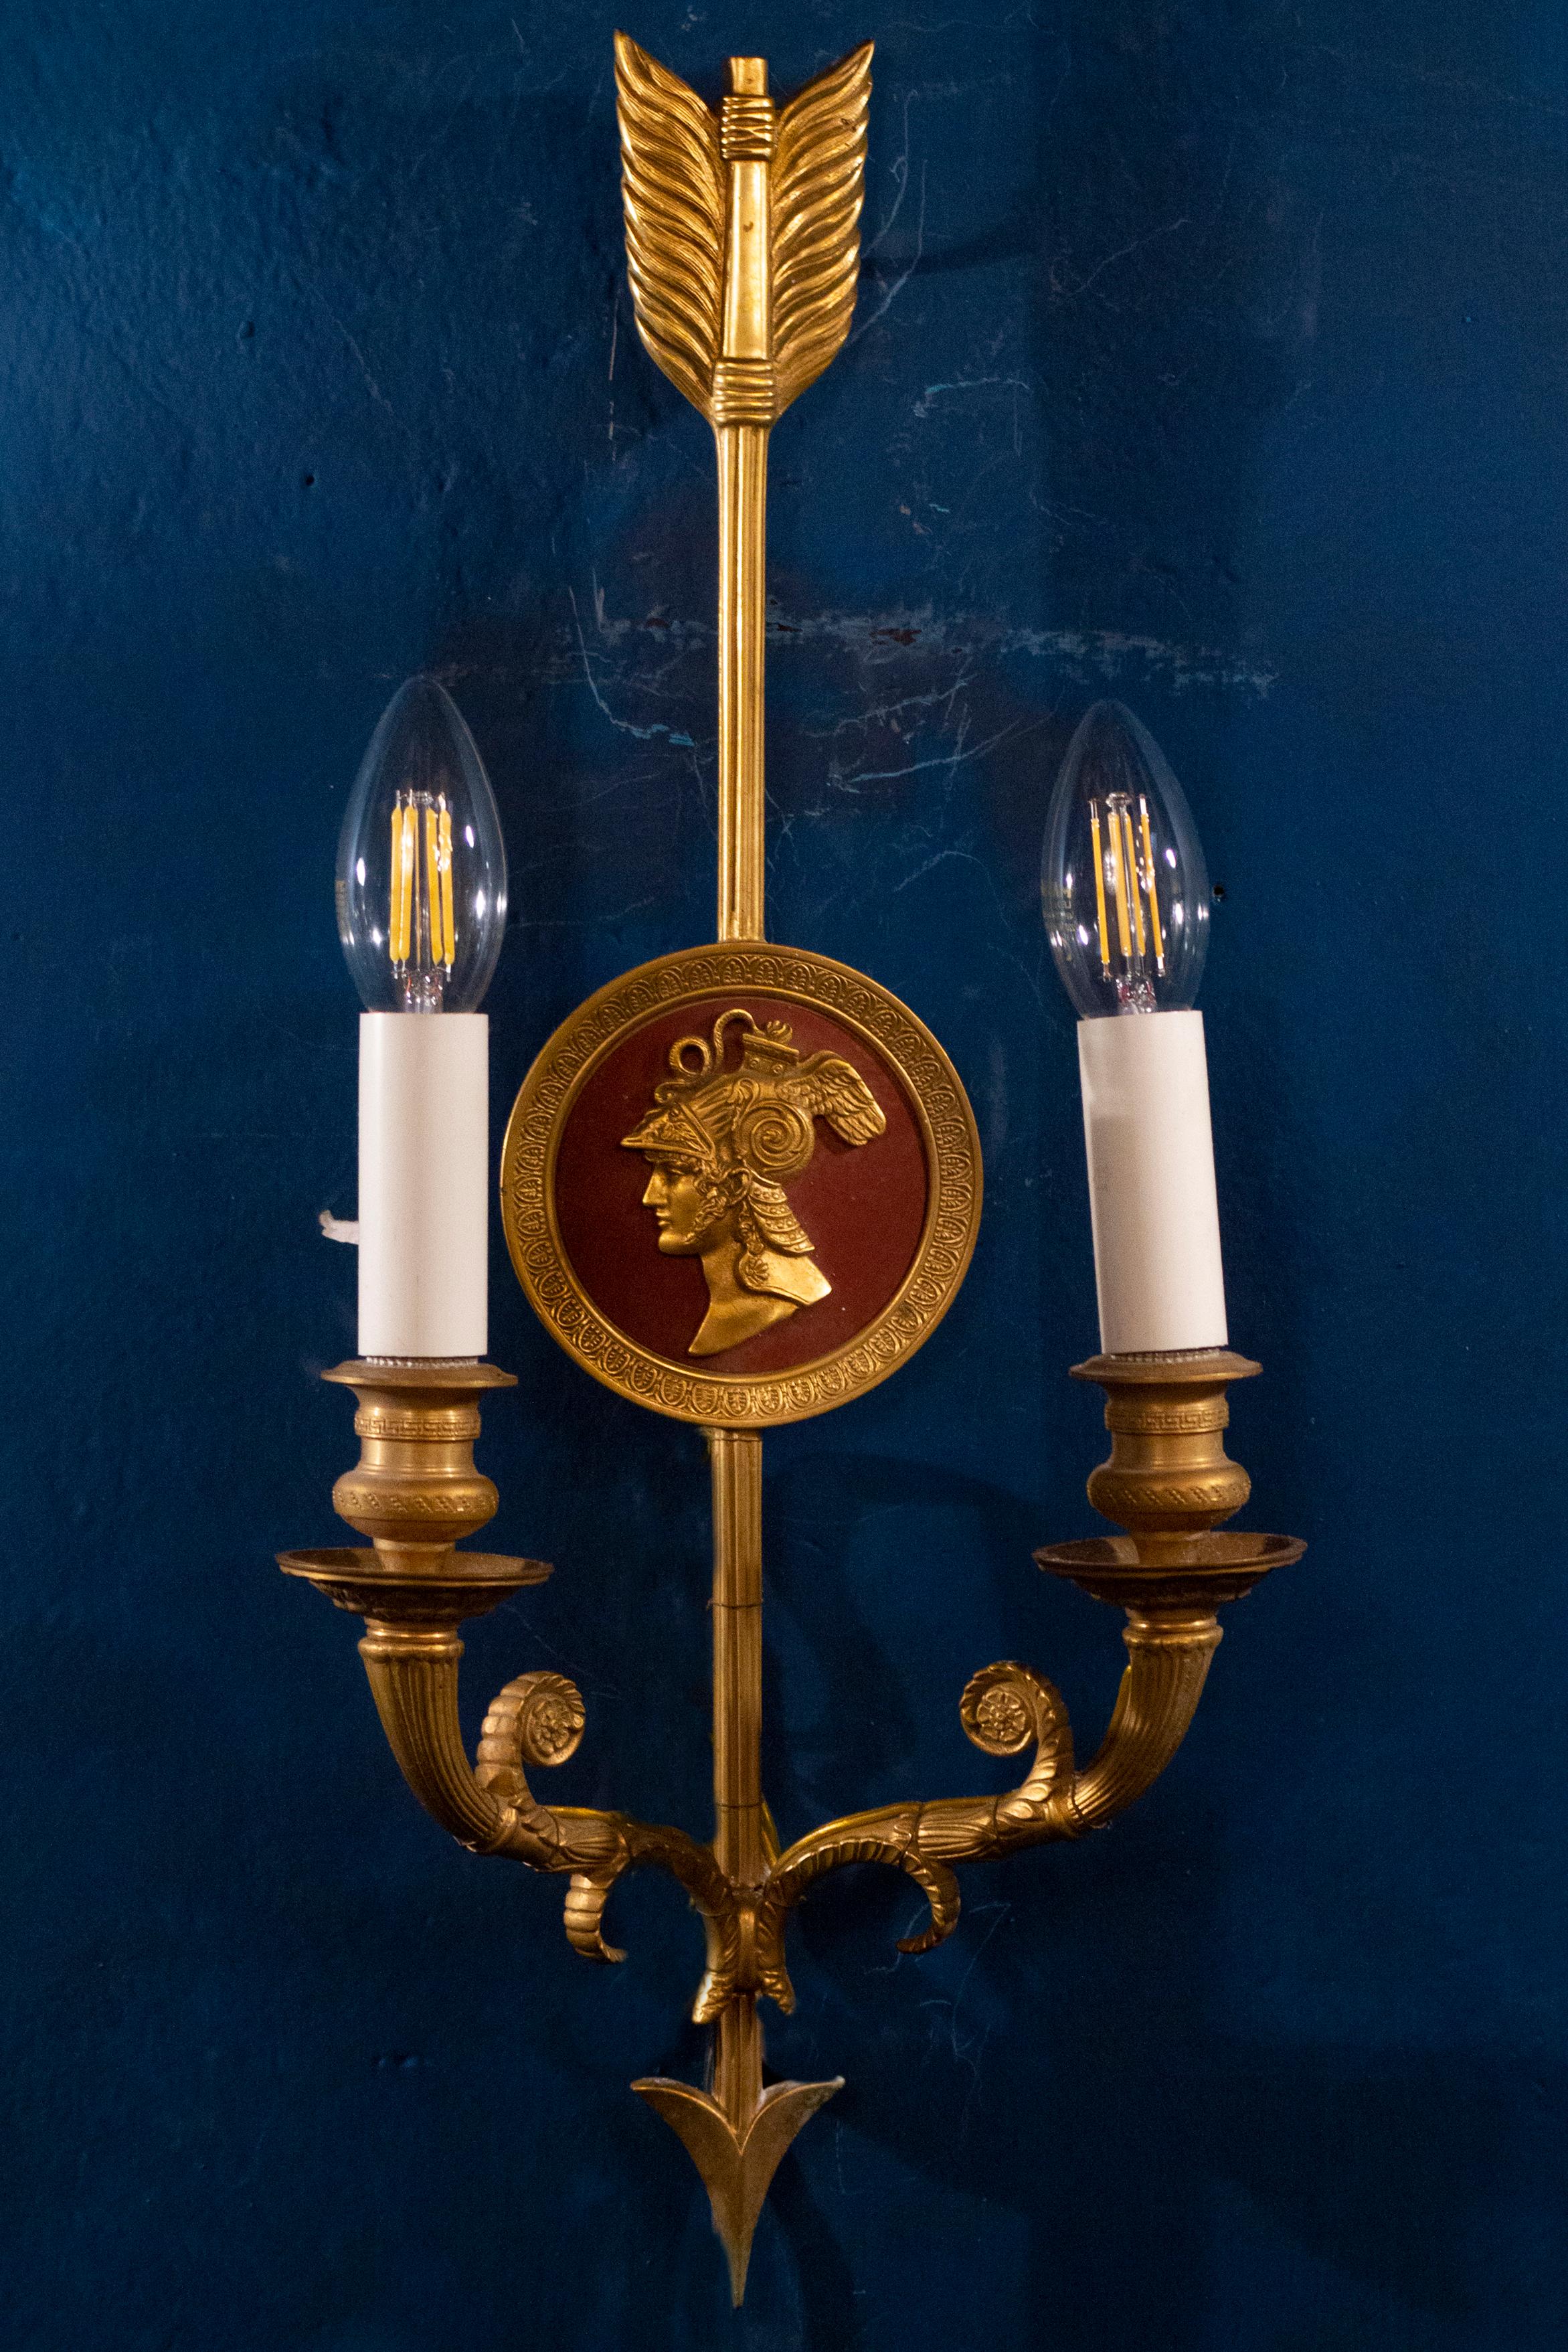 Zwei neoklassizistische Wandleuchter aus Bronze mit zwei Lampen.
ein weiteres Paar mit einer blauen Verzierung in der Mitte erhältlich.
Maße: cm 48 x 22.